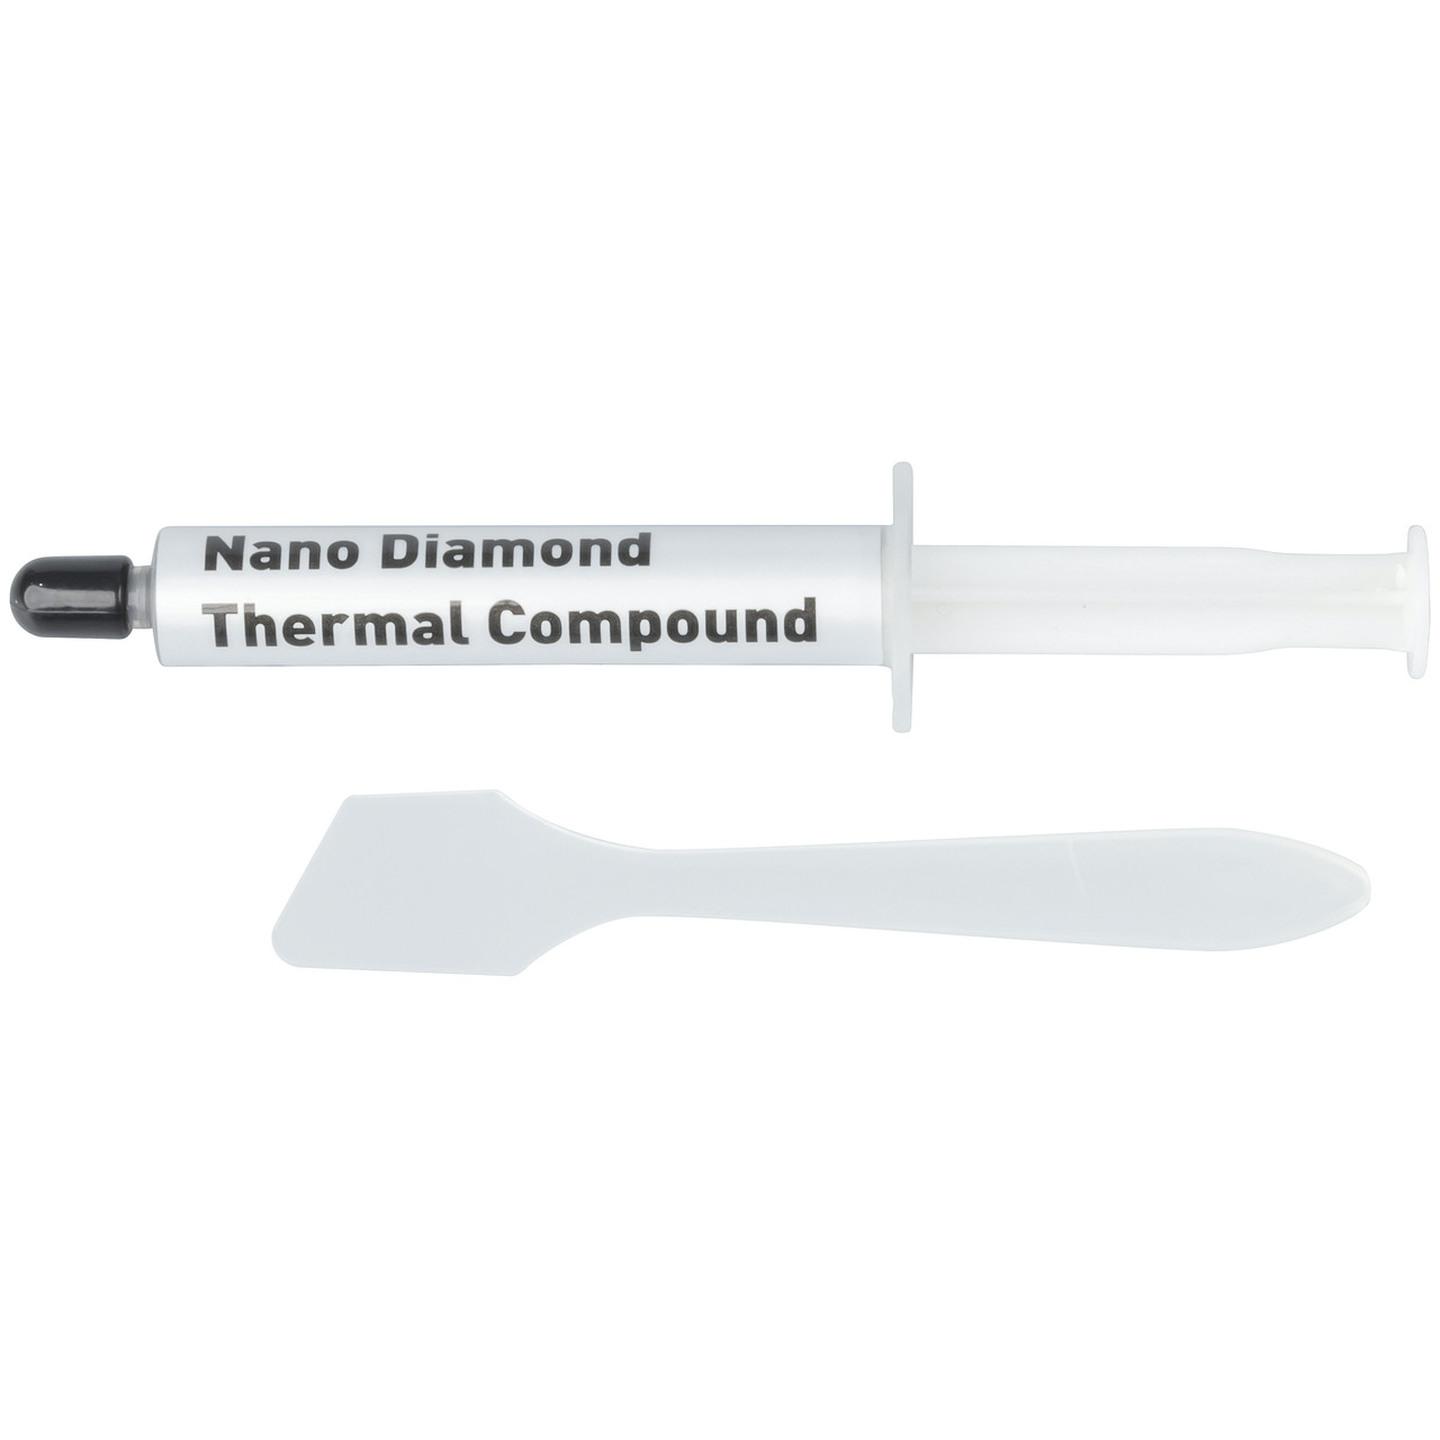 Heatsink Compound - 3g Syringe with Applicator